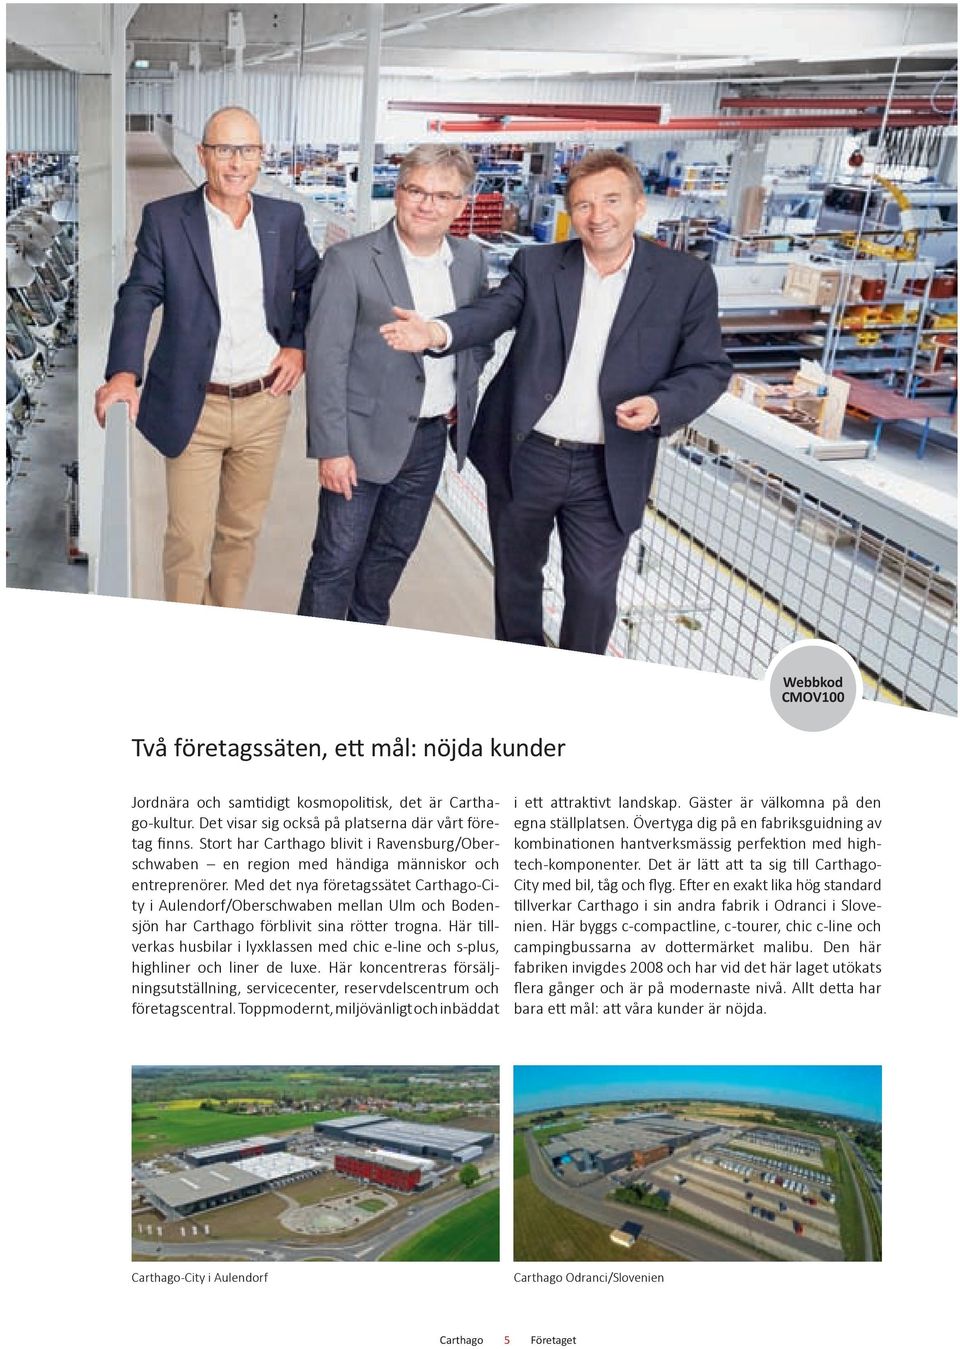 Med det nya företagssätet -City i Aulendorf/Oberschwaben mellan Ulm och Bodensjön har förblivit sina rötter trogna.